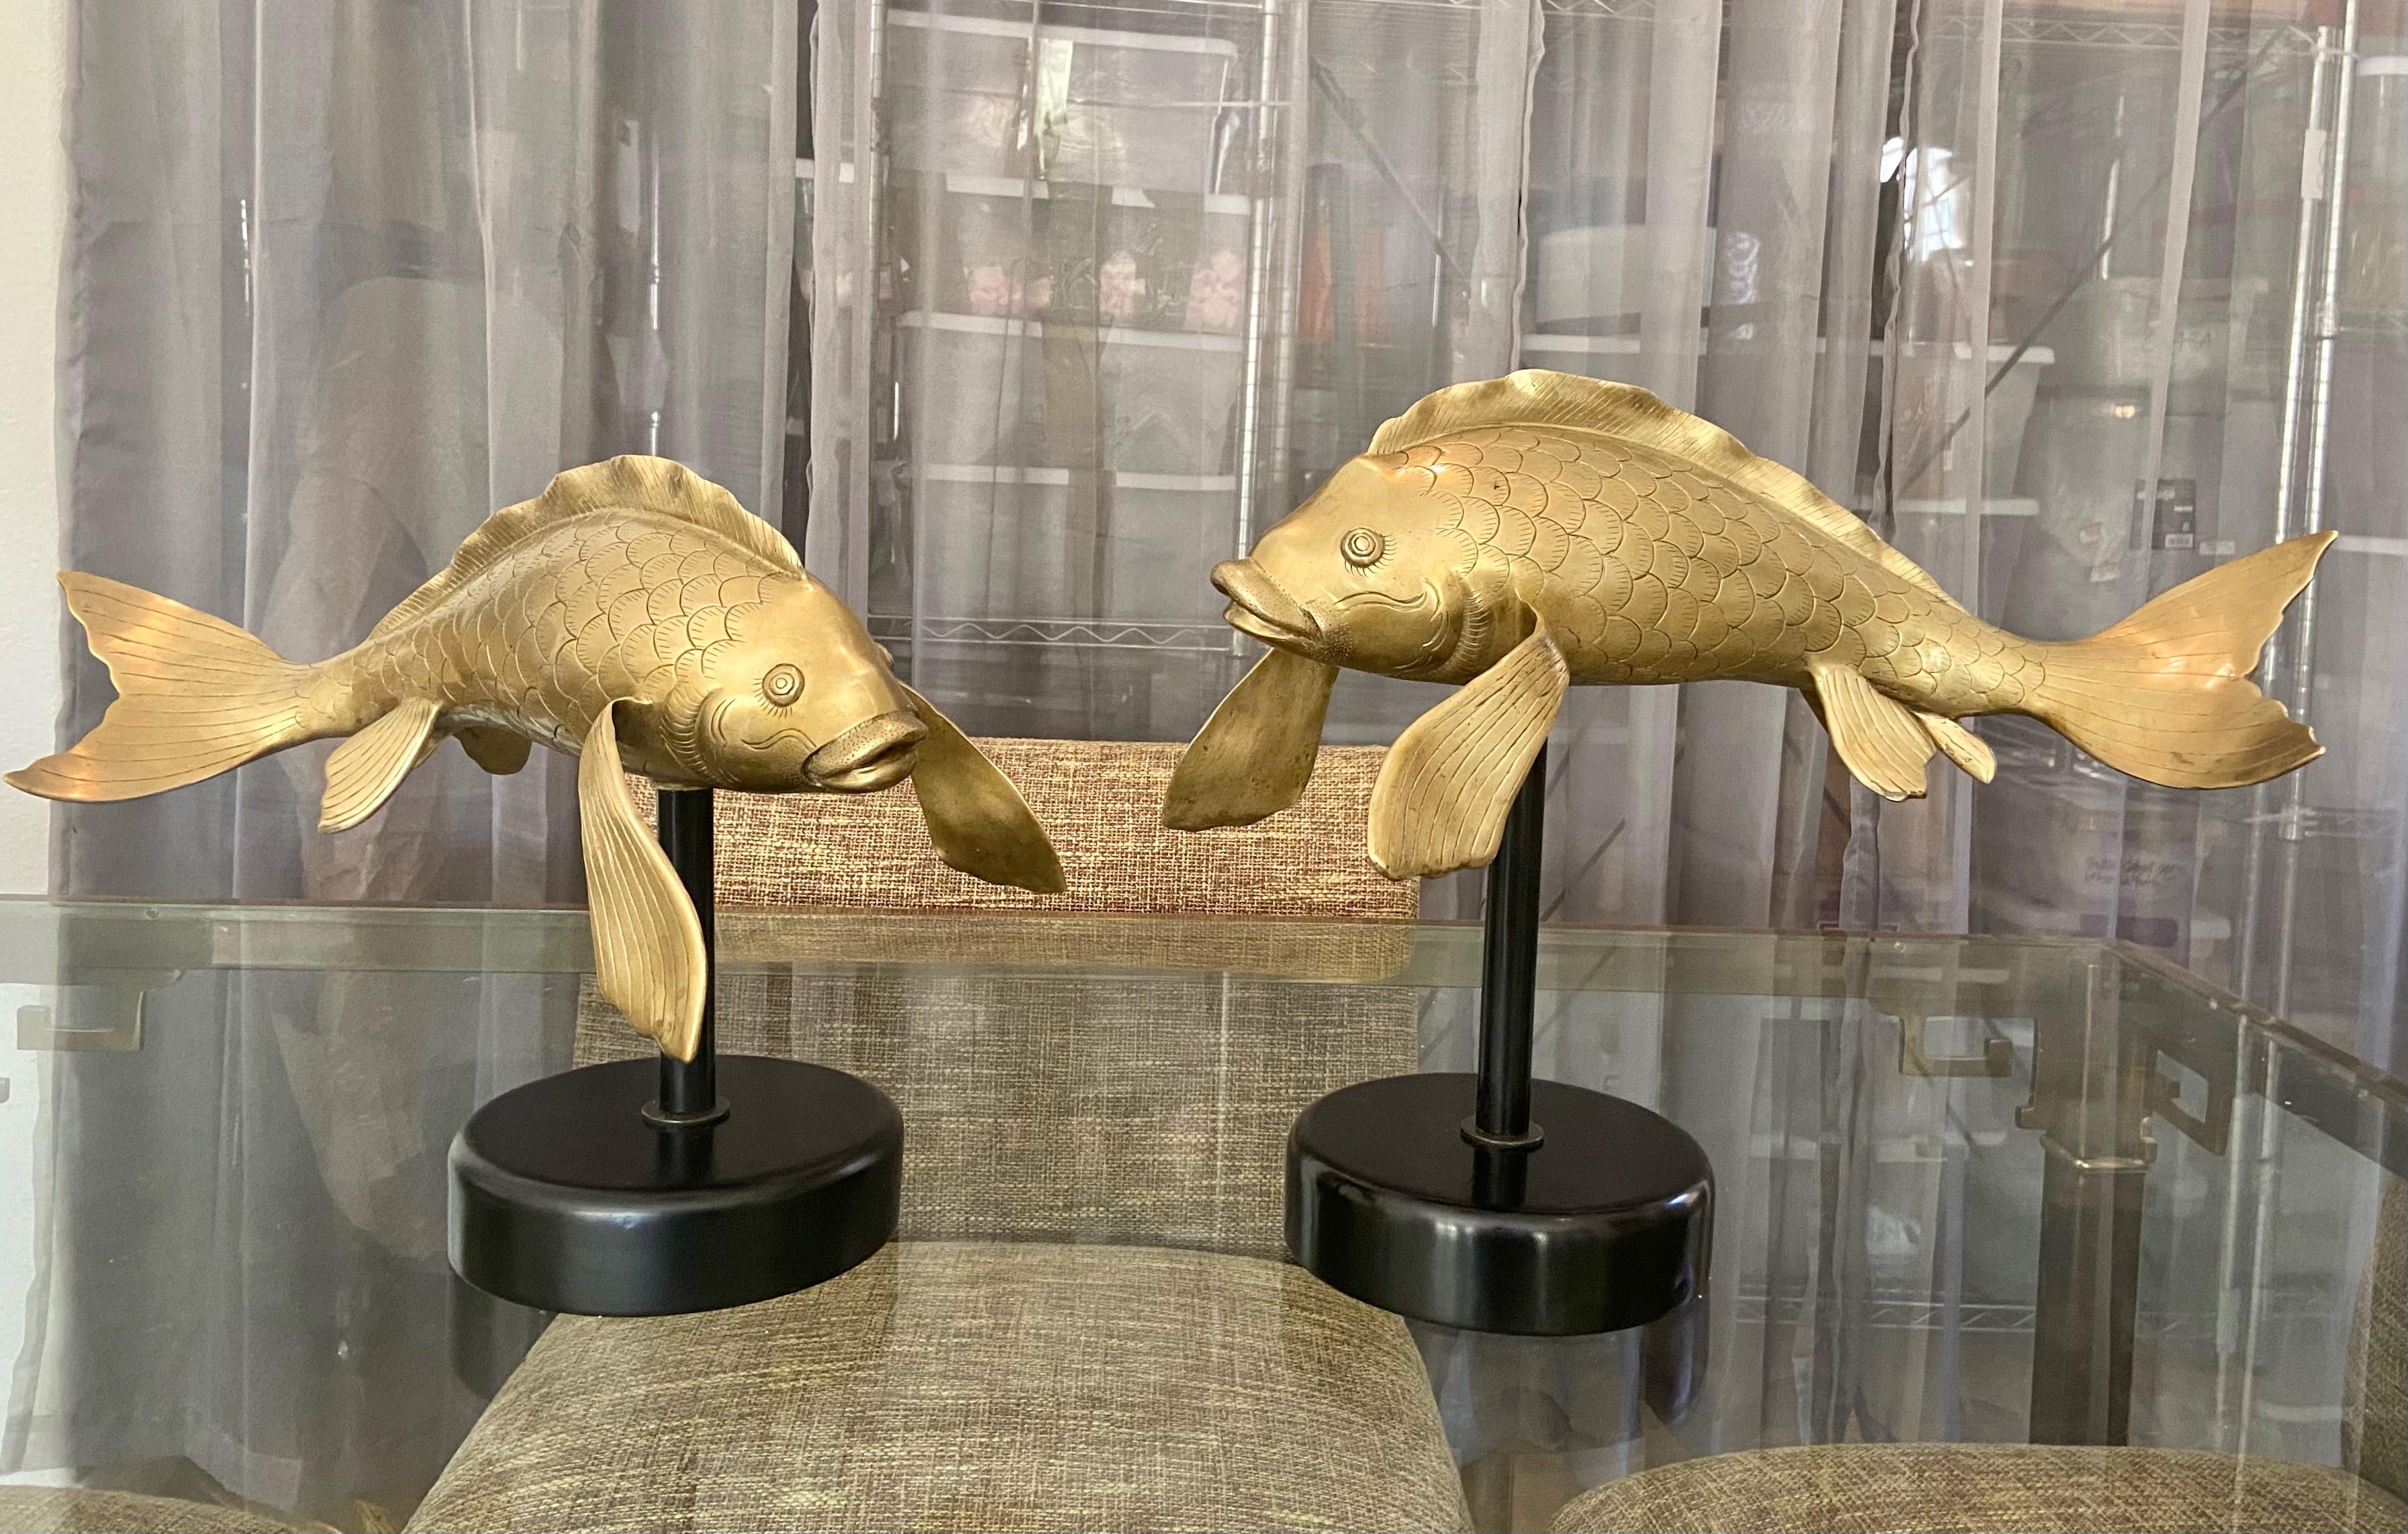 Paire de grands sculpteurs asiatiques de poissons koï en laiton moulé, nouvellement montés sur des bases en bois et métal laqué noir. Chaque poisson est finement ouvragé et de taille très différente. Les bases sont légèrement différentes en hauteur,